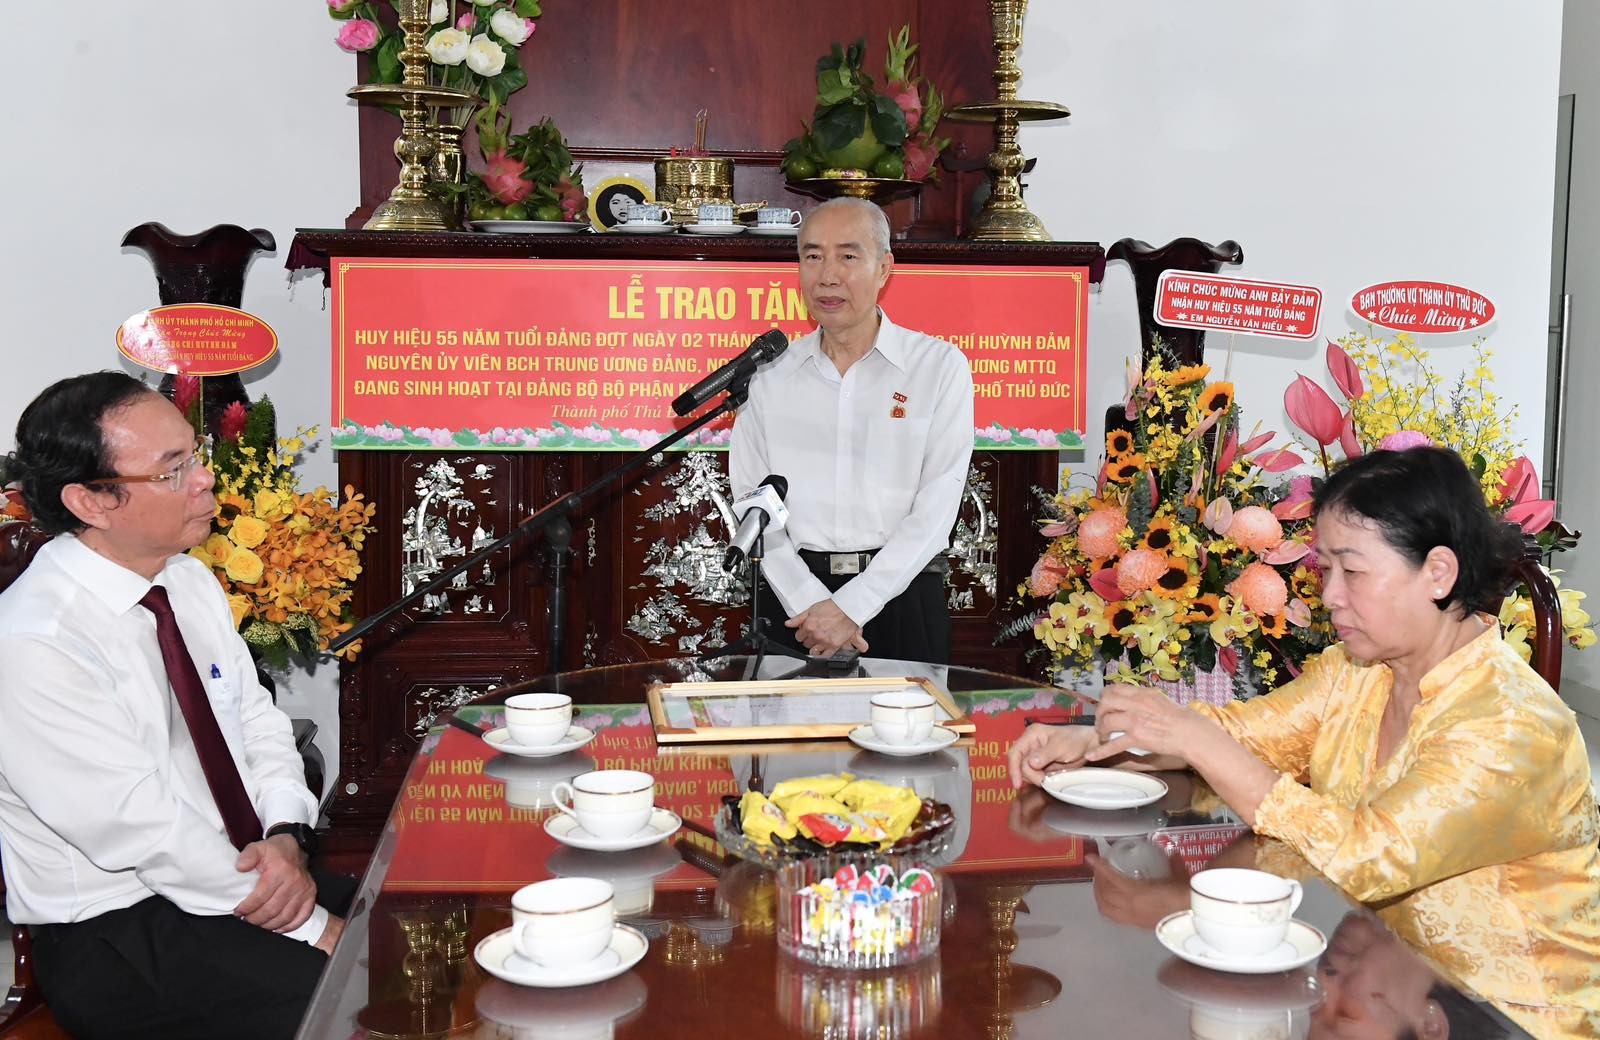 Đồng chí Huỳnh Đảm phát biểu tại buổi lễ nhận Huy hiệu 55 năm tuổi Đảng (Ảnh: Việt Dũng).